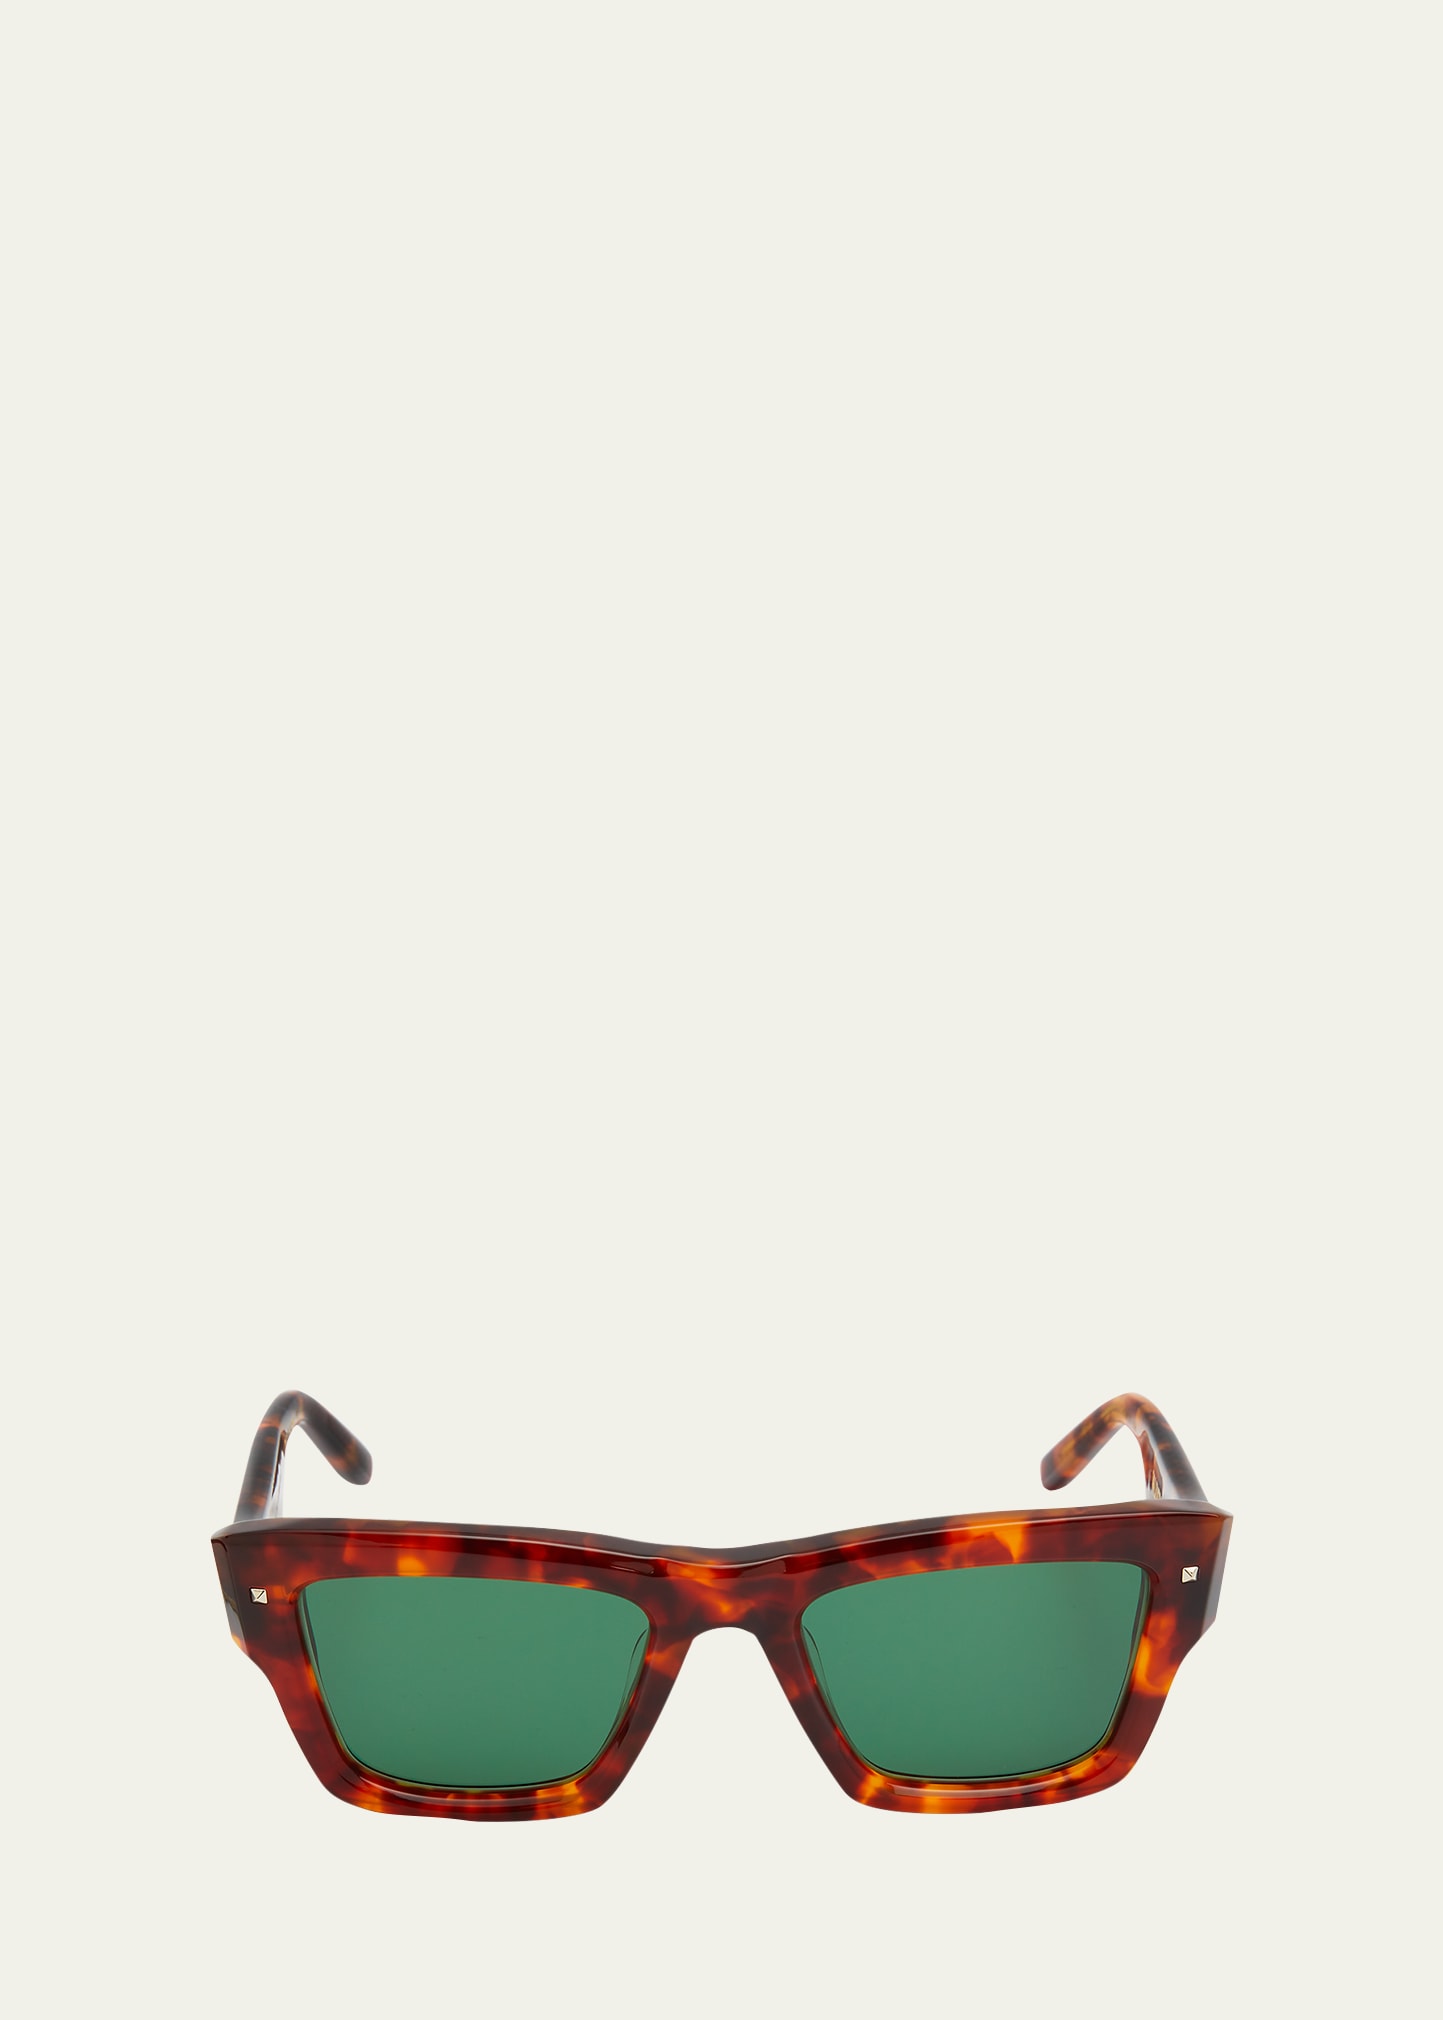 XXII rectangular sunglasses